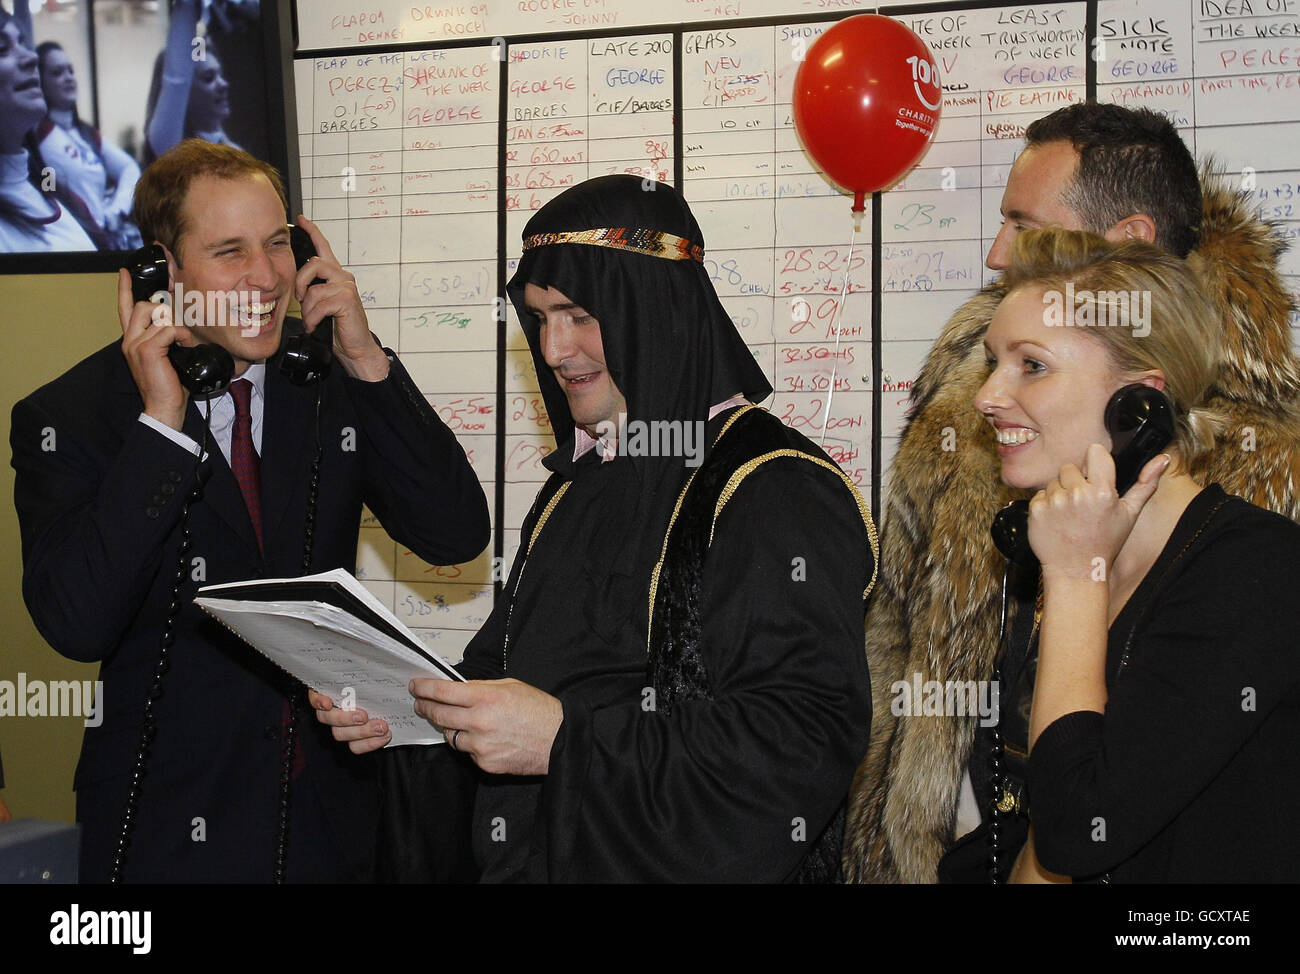 Prince William (à gauche) conclut une transaction téléphonique à l'ICAP alors qu'il participe à la Journée annuelle de la Charité de l'ICAP à Londres. Banque D'Images